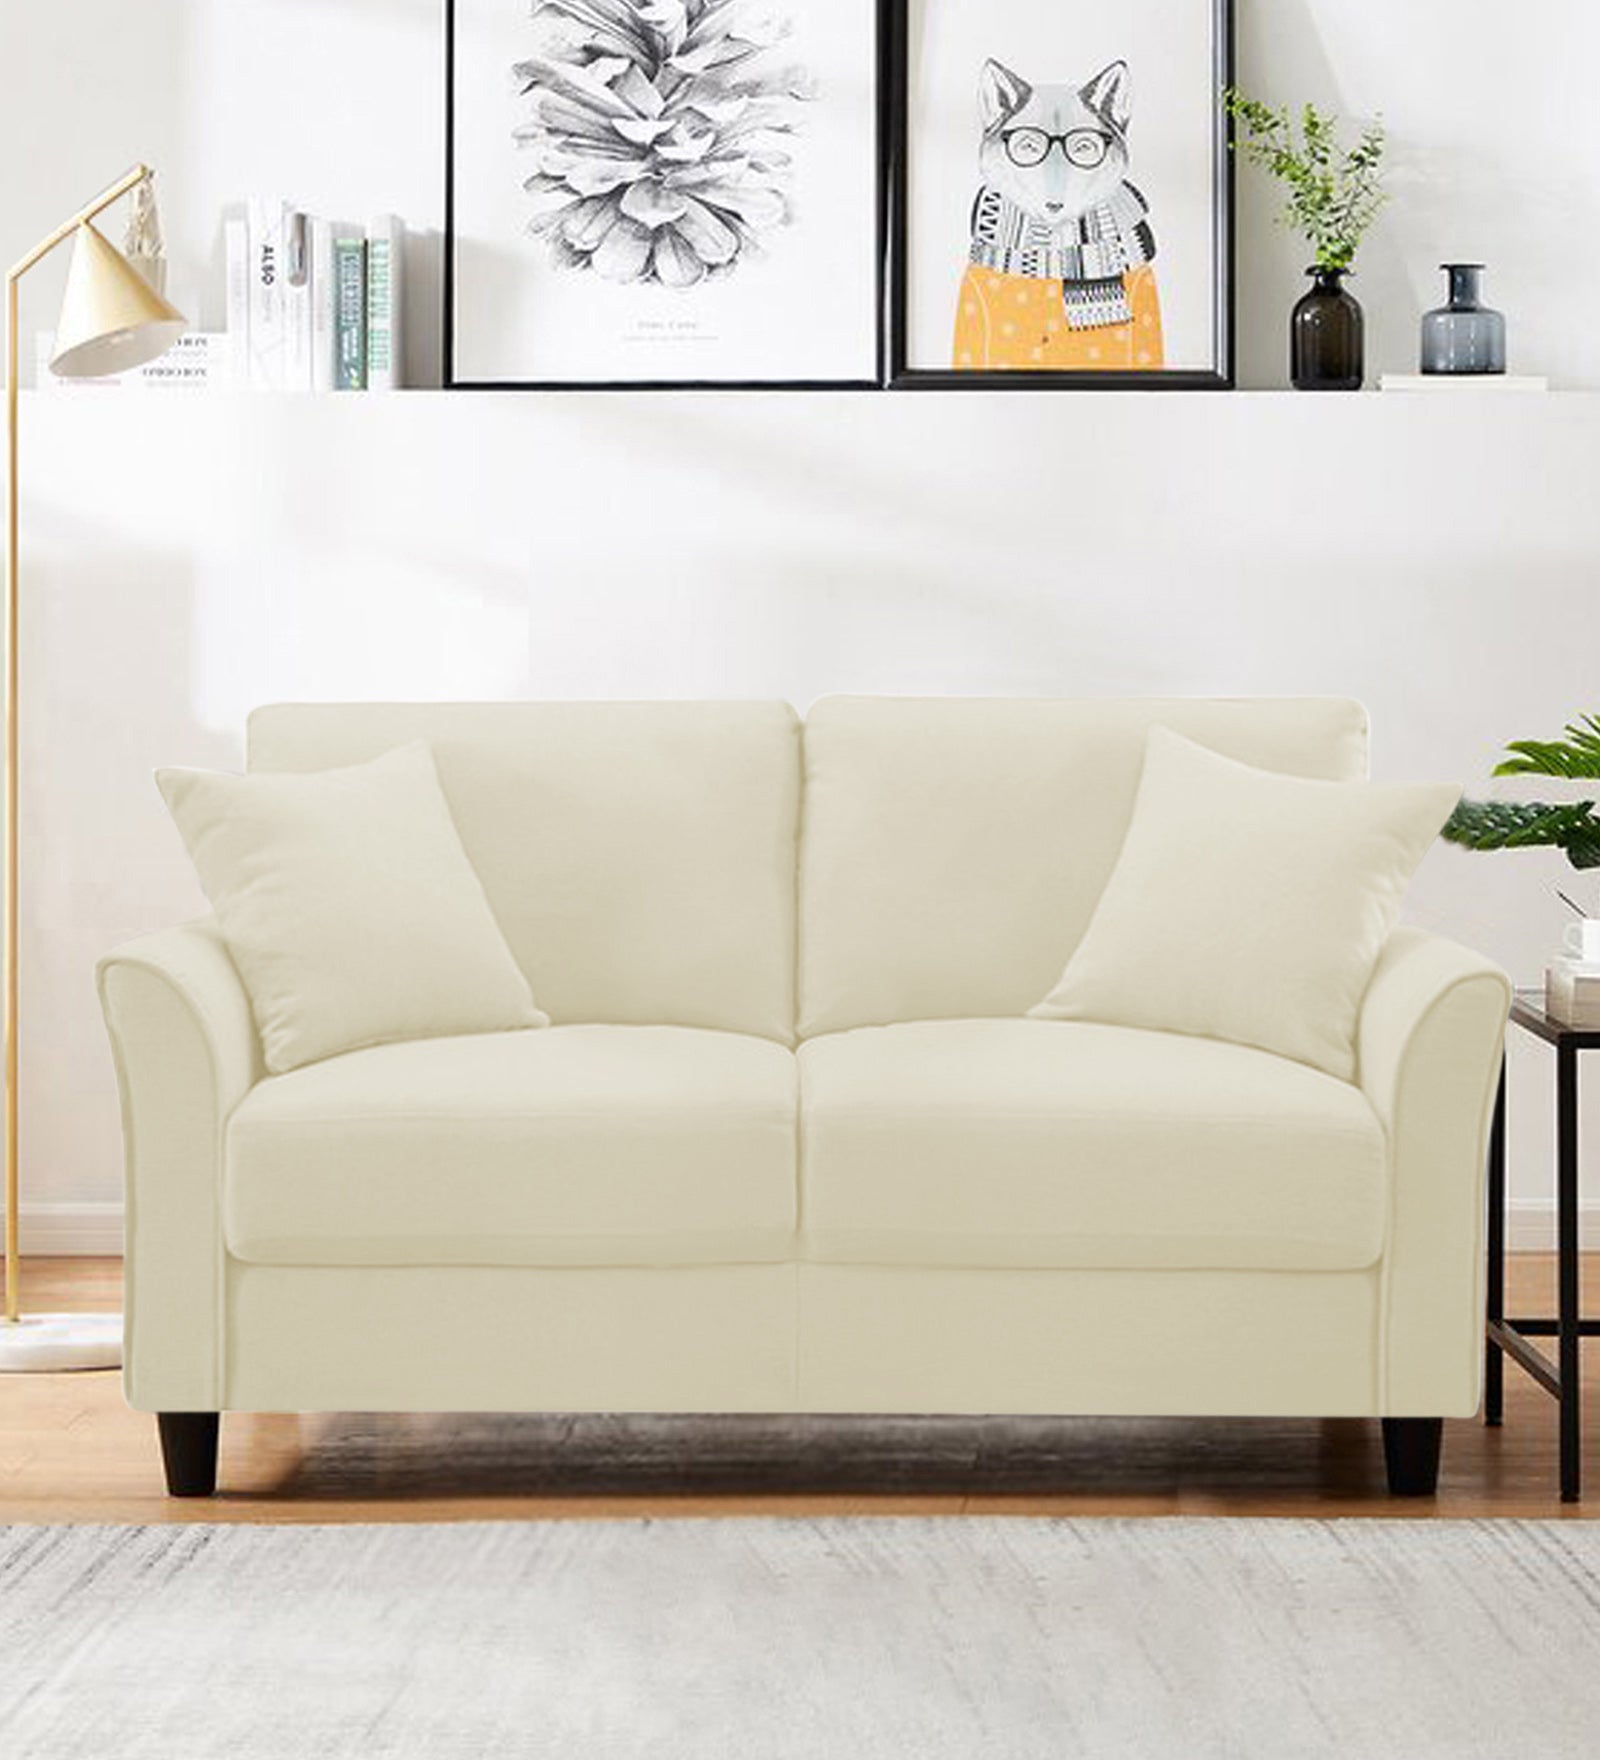 Daroo Velvet 2 Seater Sofa In Warm White Colour